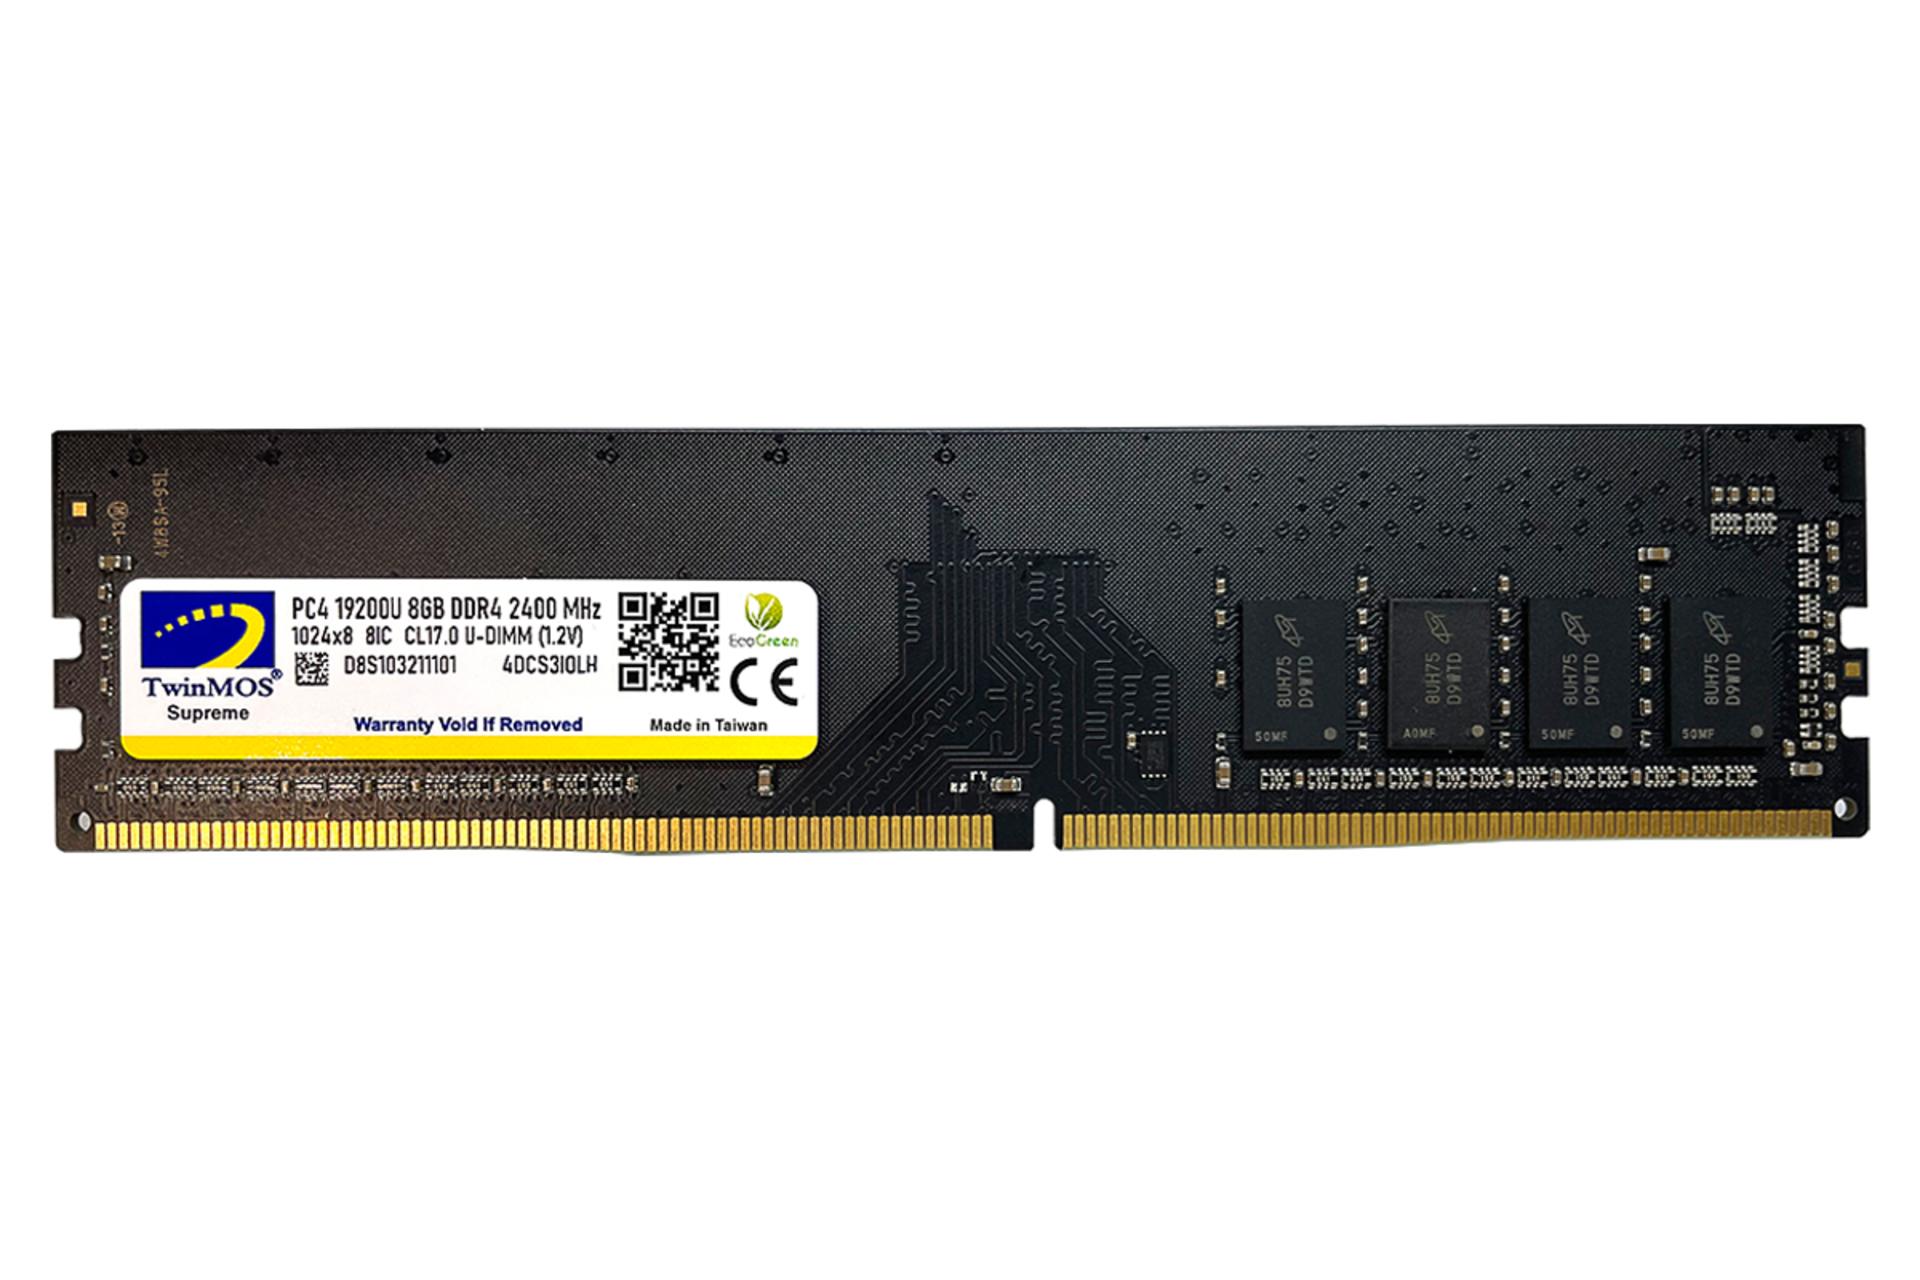 رم توین موس MDD48GB2400D ظرفیت 8 گیگابایت از نوع DDR4-2400